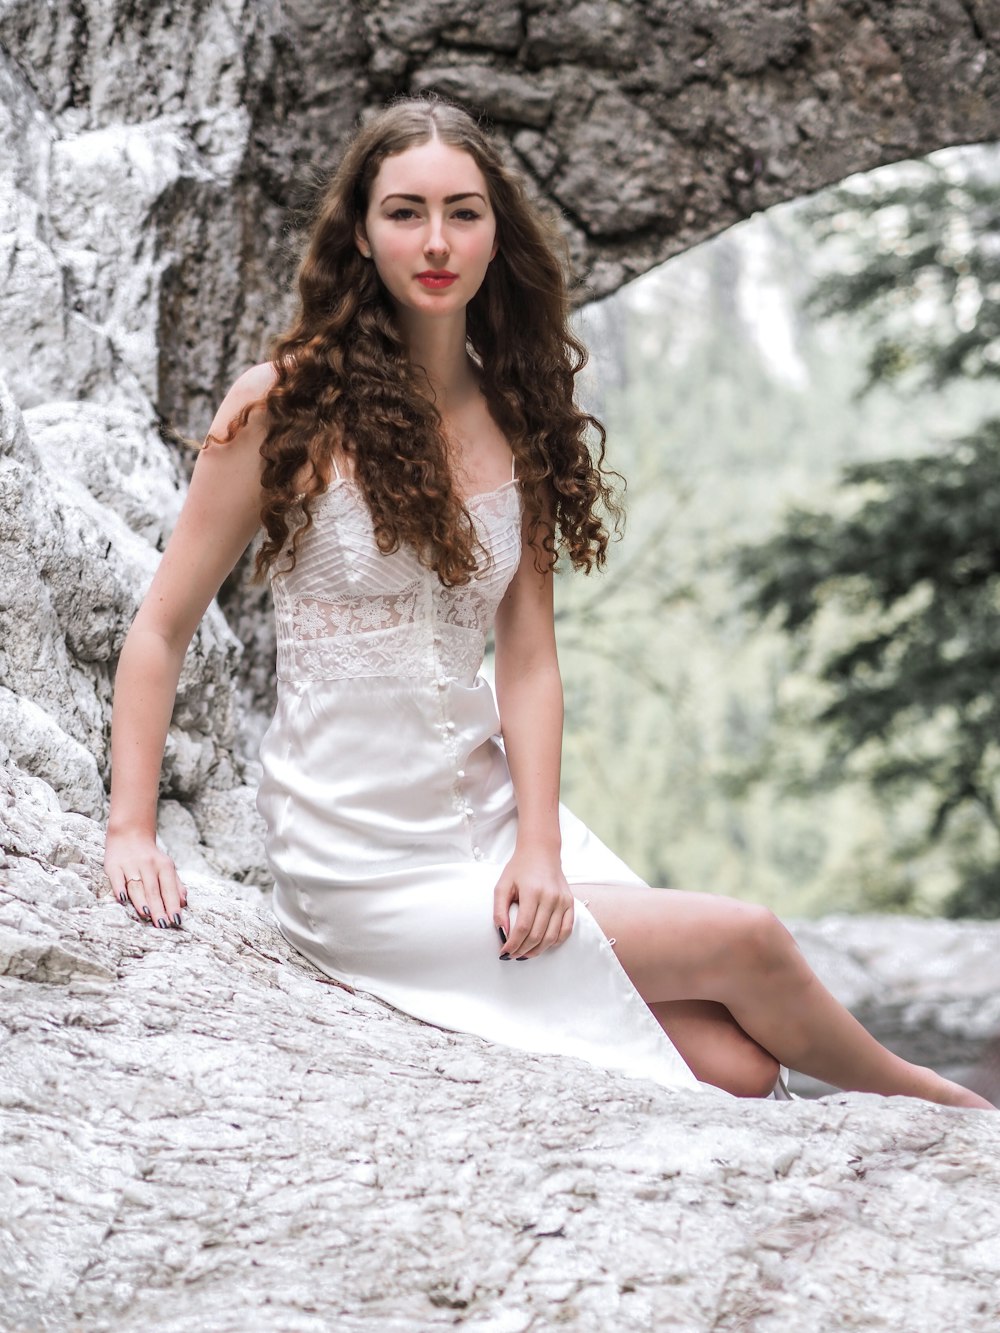 Mujer sonriente en vestido blanco abotonado sentado en la roca